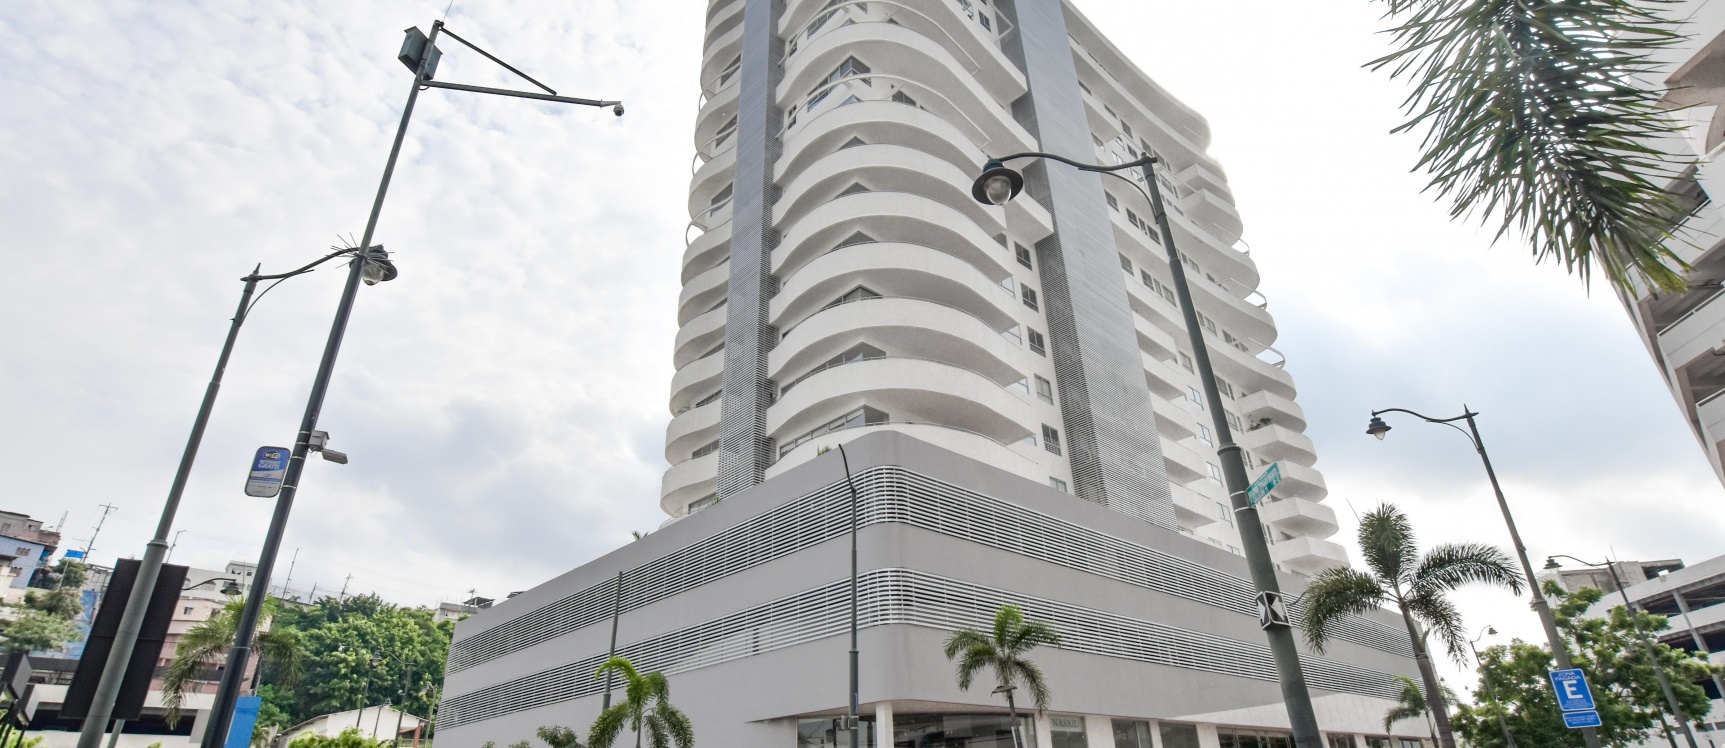 GeoBienes - Penthouse de estreno en Venta ubicado en Santana Lofts - Plusvalia Guayaquil Casas de venta y alquiler Inmobiliaria Ecuador